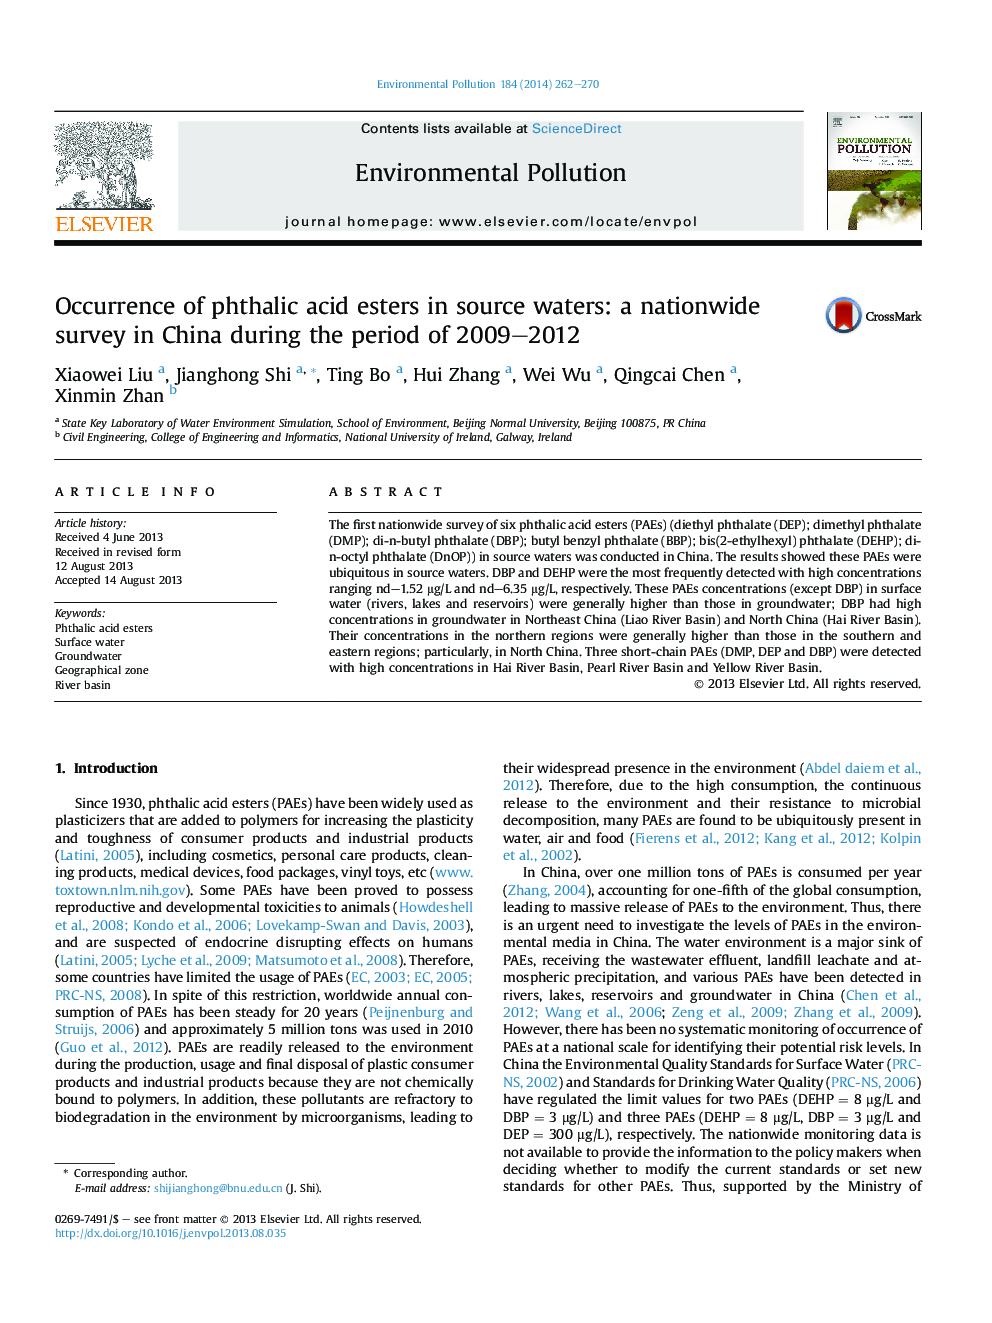 وجود اسیدهای فتالیک اسید در آب های منبع: بررسی در سراسر کشور در چین در طول 2009-2012 